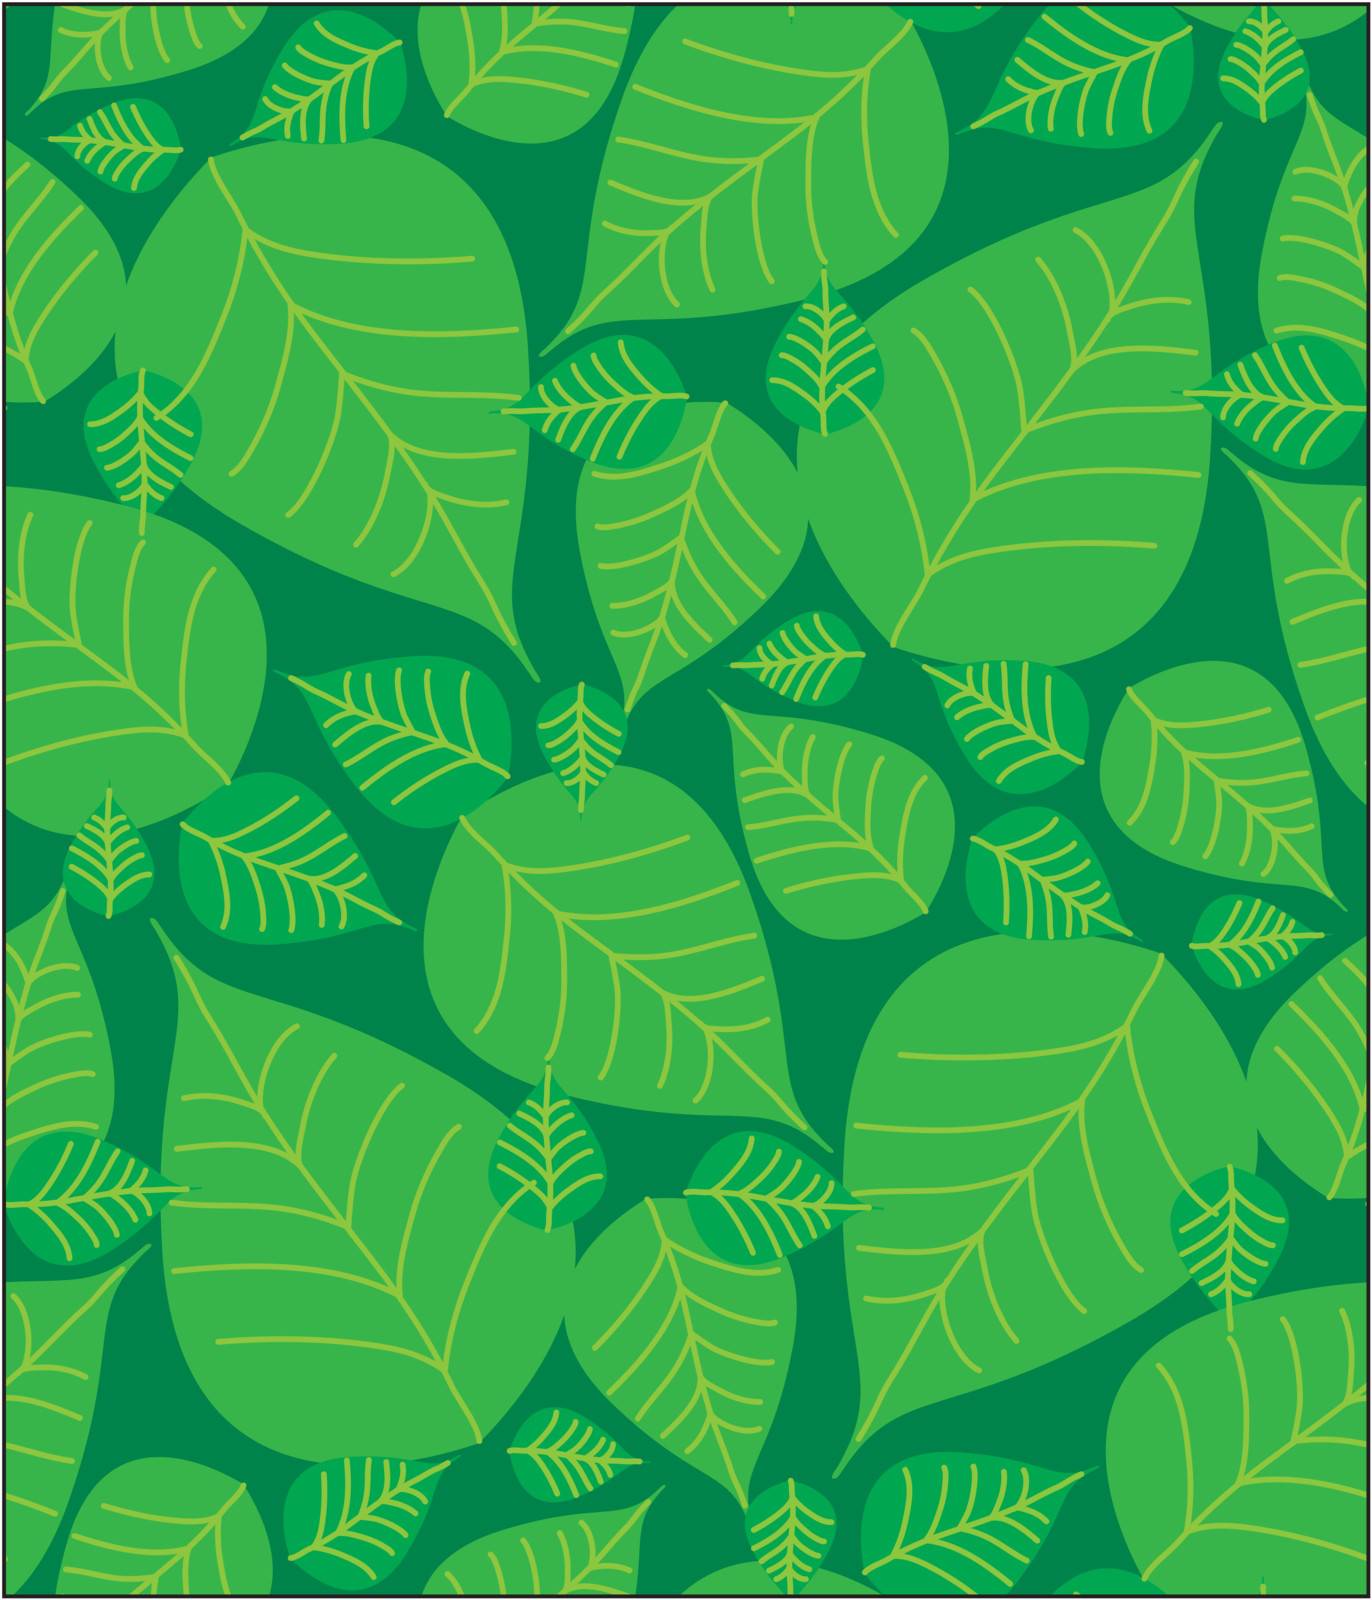 Foliage seamless pattern by bonathos